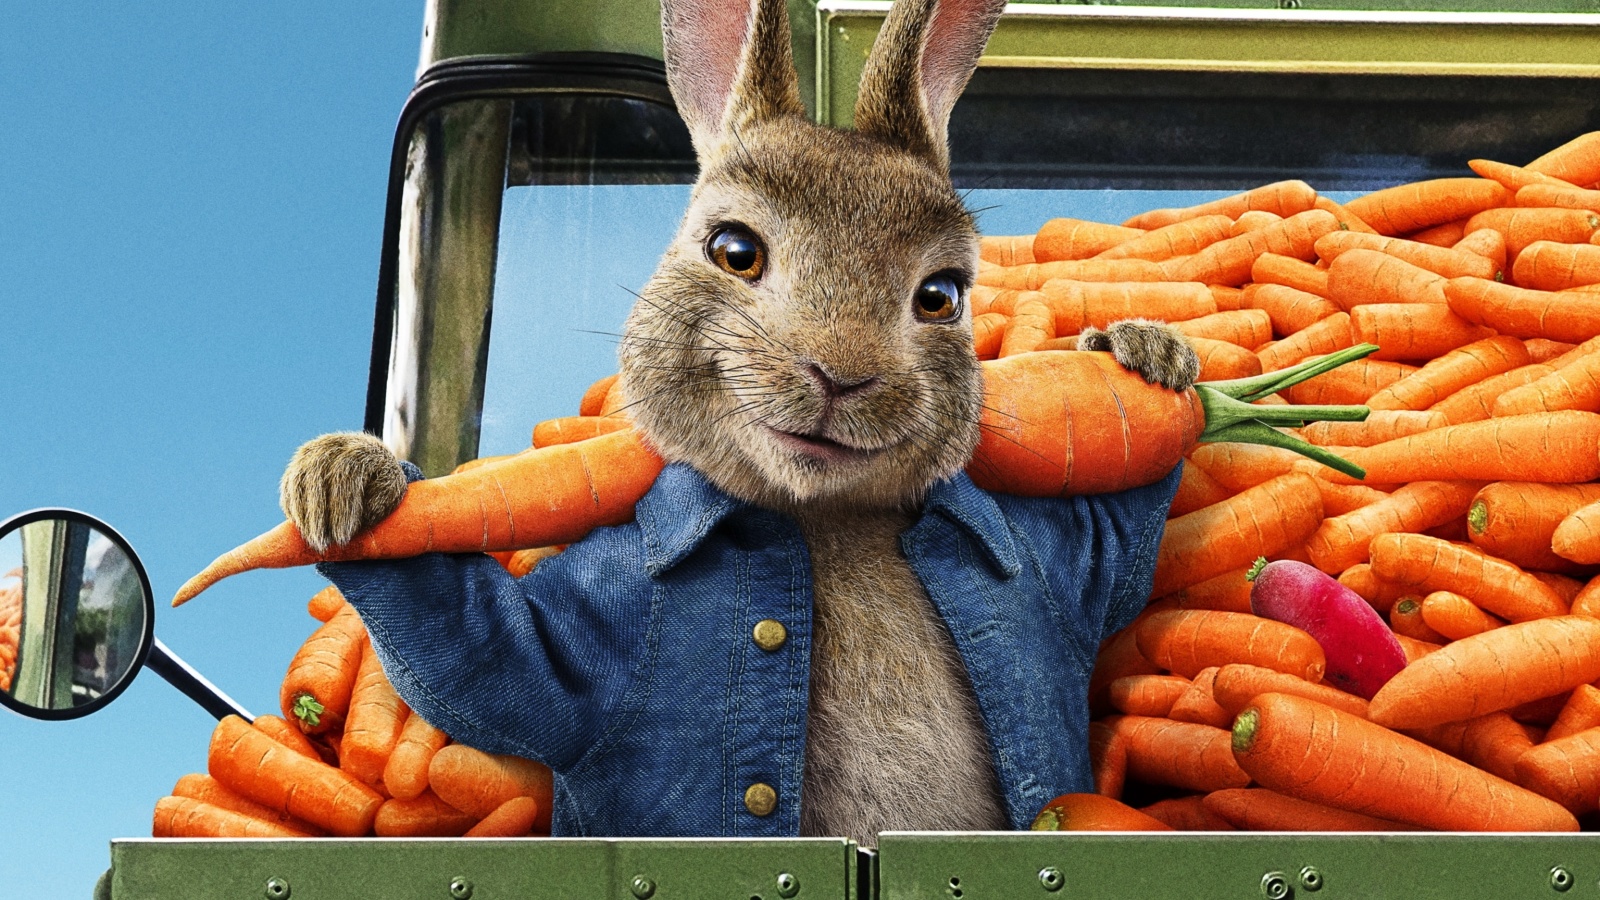 Peter Rabbit 2 The Runaway 2020 wallpaper 1600x900